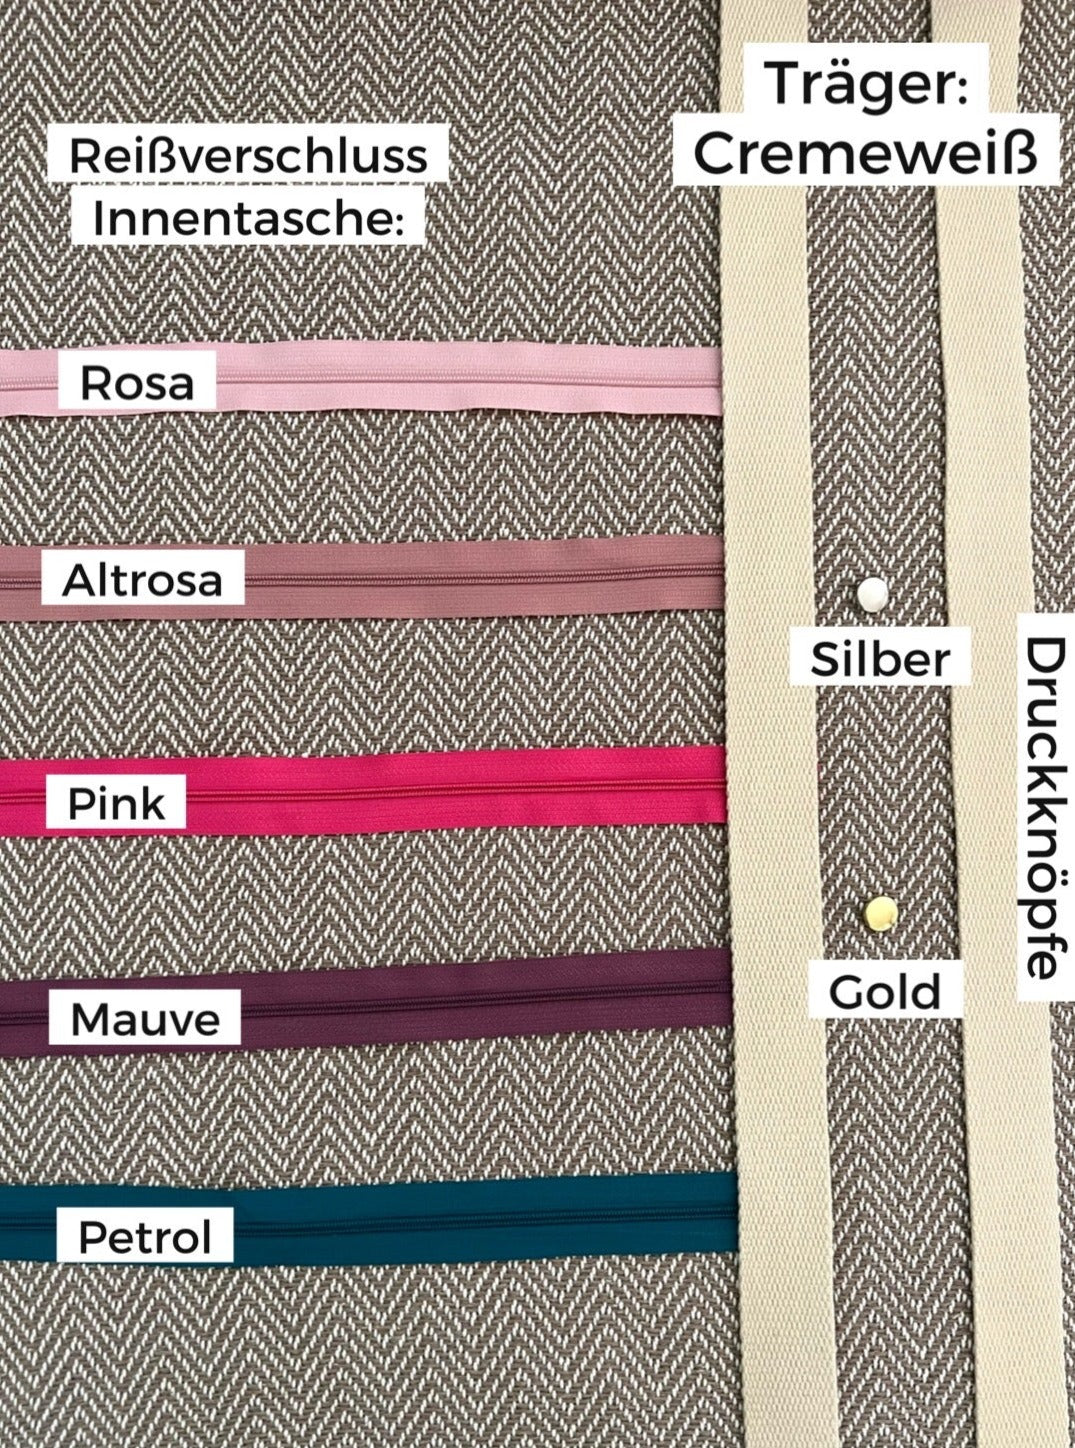 Chevron-Muster beige, Variante: Träger Cremeweiß, Reißverschluss der Innentasche kann in den abgebildeten Farben ausgewählt werden. Druckknöpfe in Silber oder Gold wählbar.